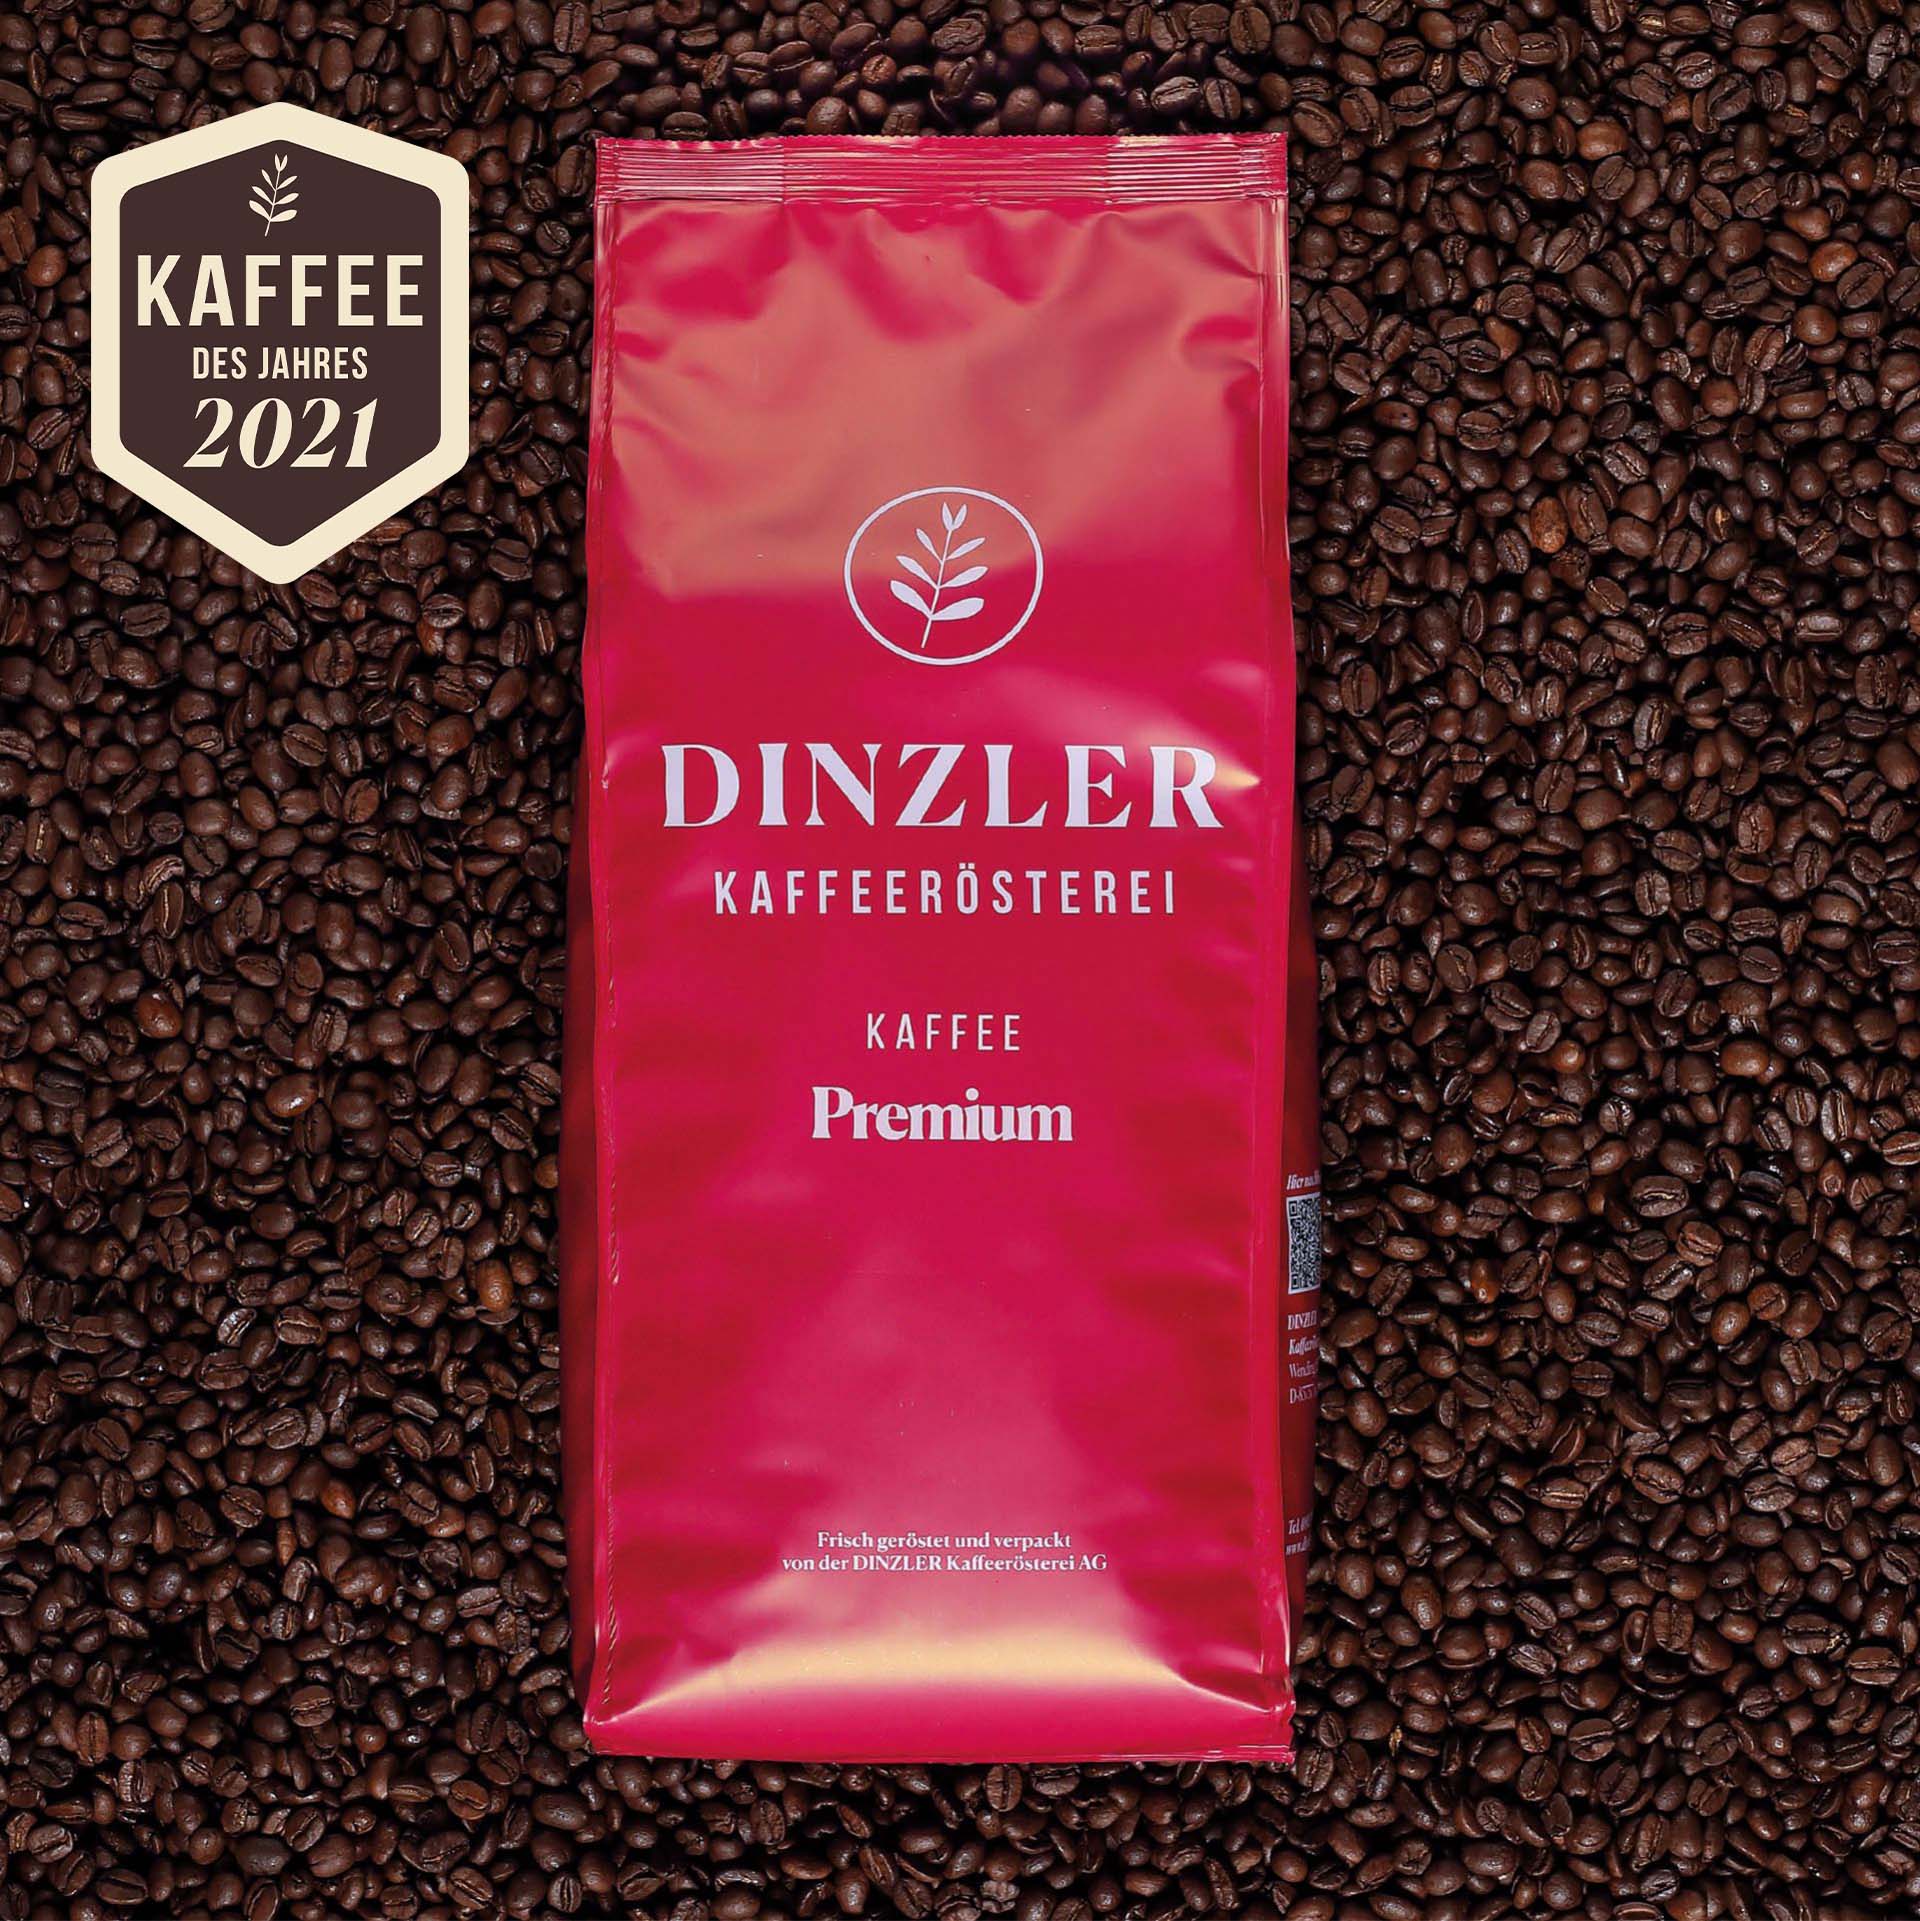 Produktbild DINZLER Kaffee Premium| DINZLER Kaffeerösterei